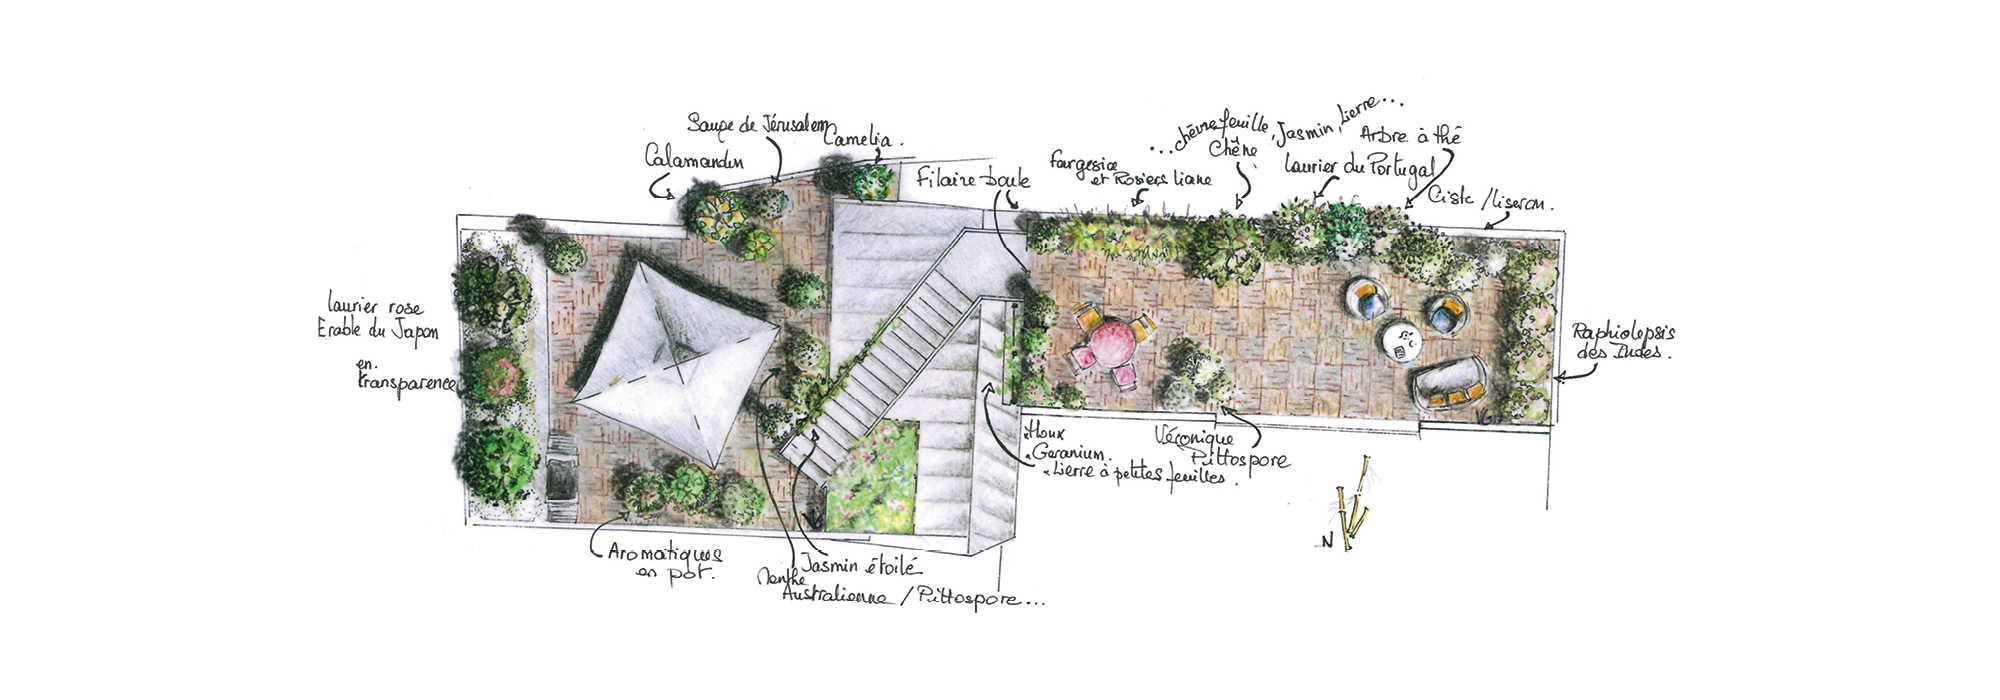 Illustration : vue du dessus des deux terrasses avec l'escalier, le mobilier et les végétaux.